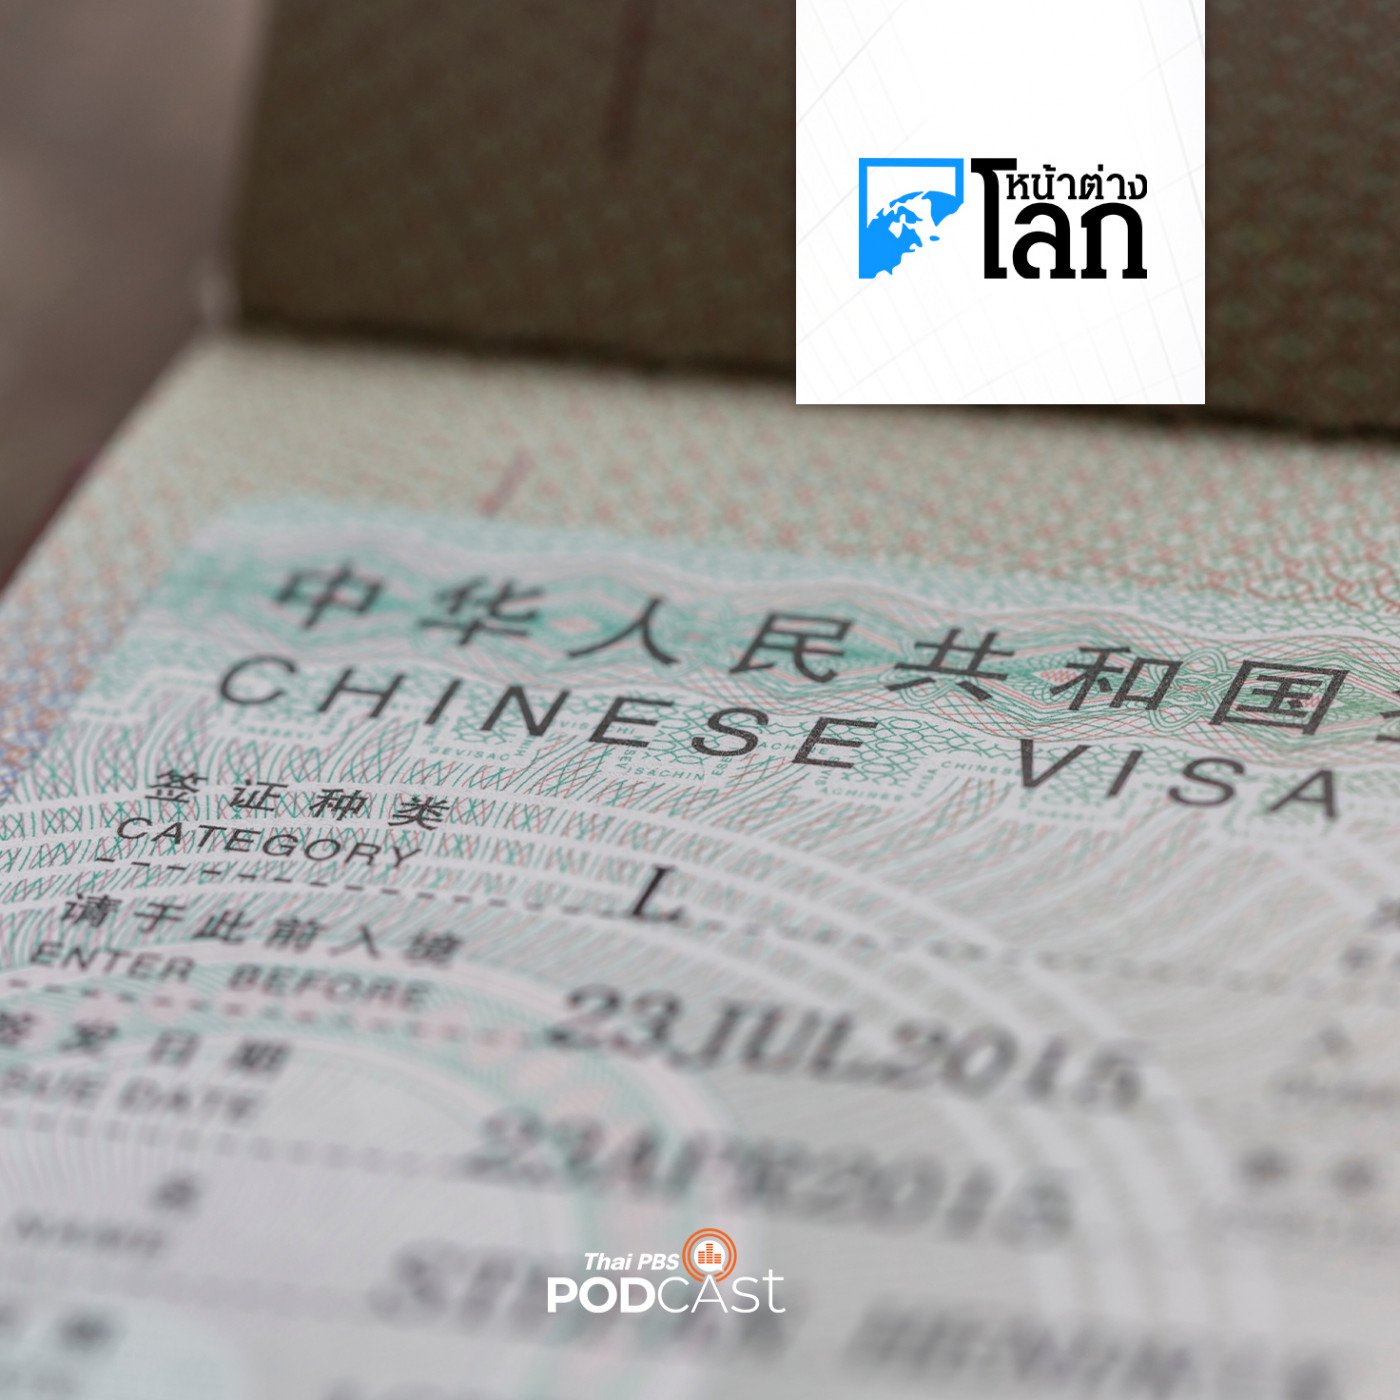 หน้าต่างโลก : จีนขยายฟรีวีซ่าหวังดึงนักท่องเที่ยวเข้าประเทศ